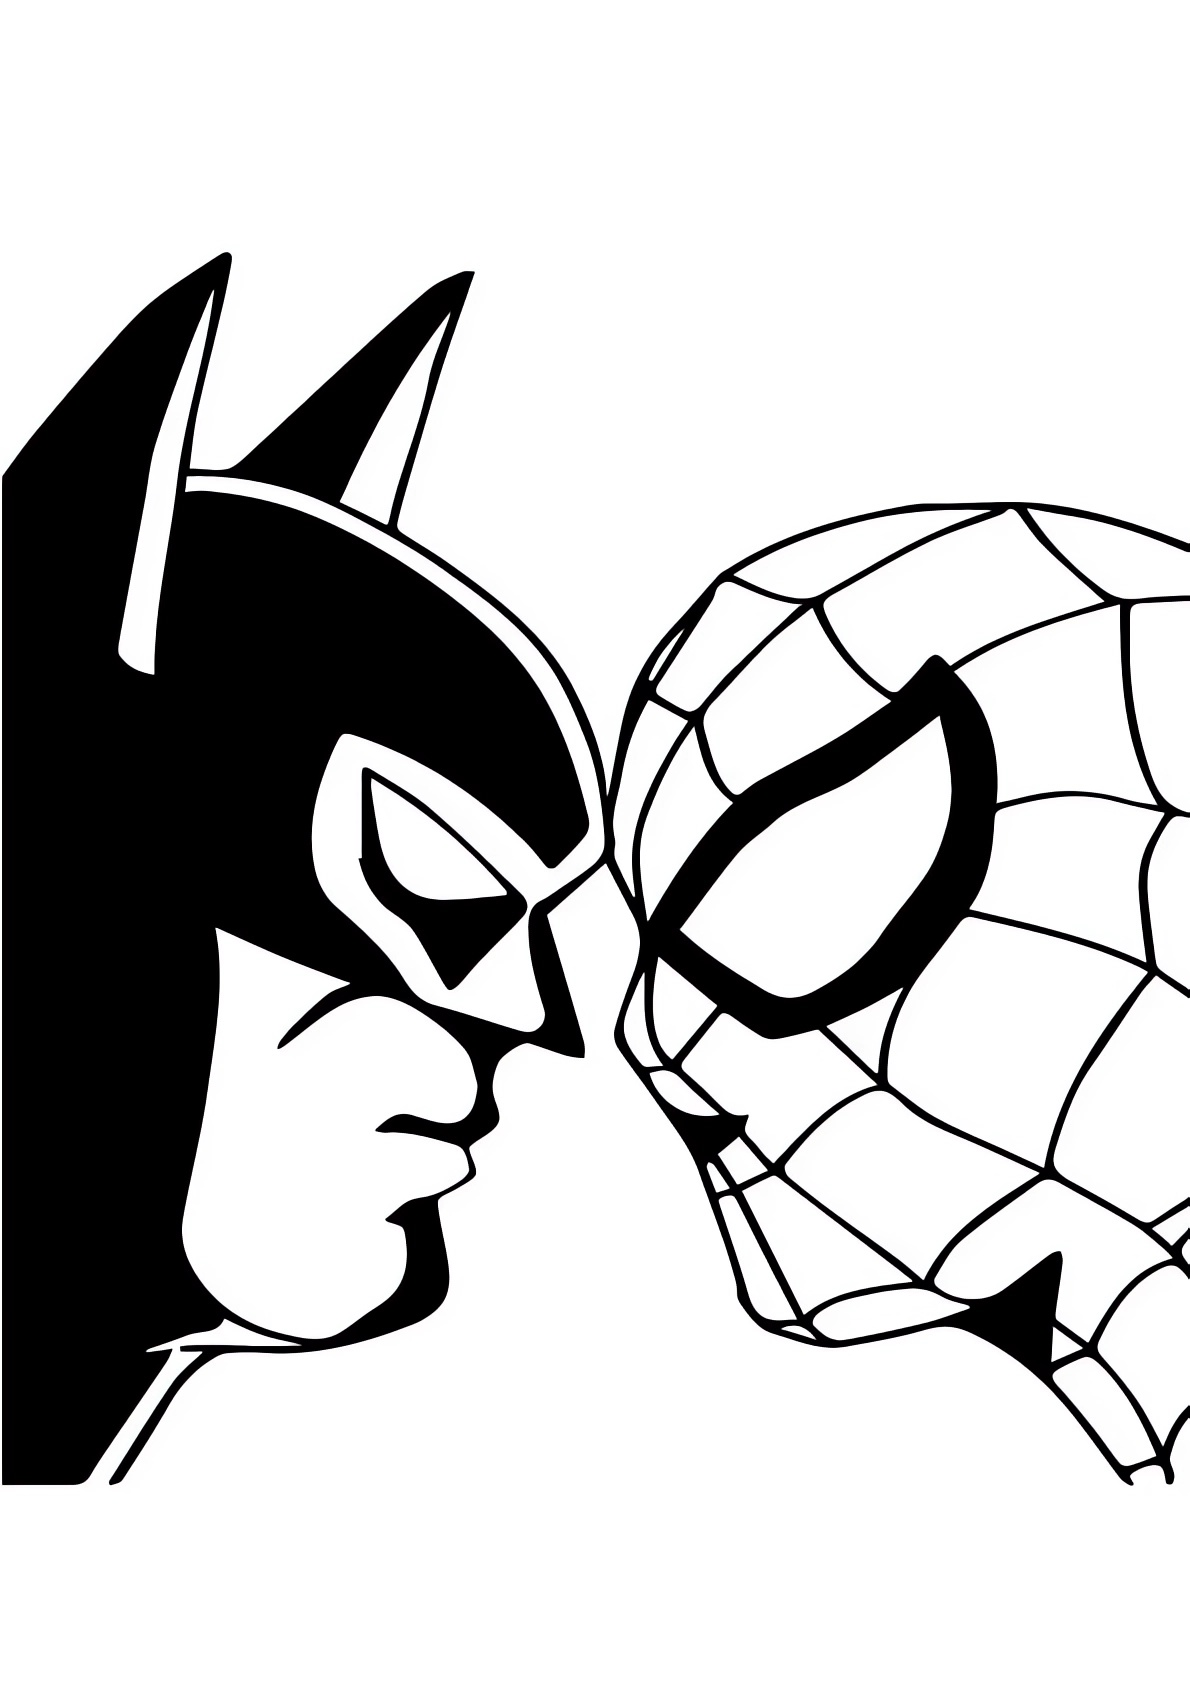 Disegno di spiderman contro batman da colorare for Disegni di spiderman da colorare e stampare